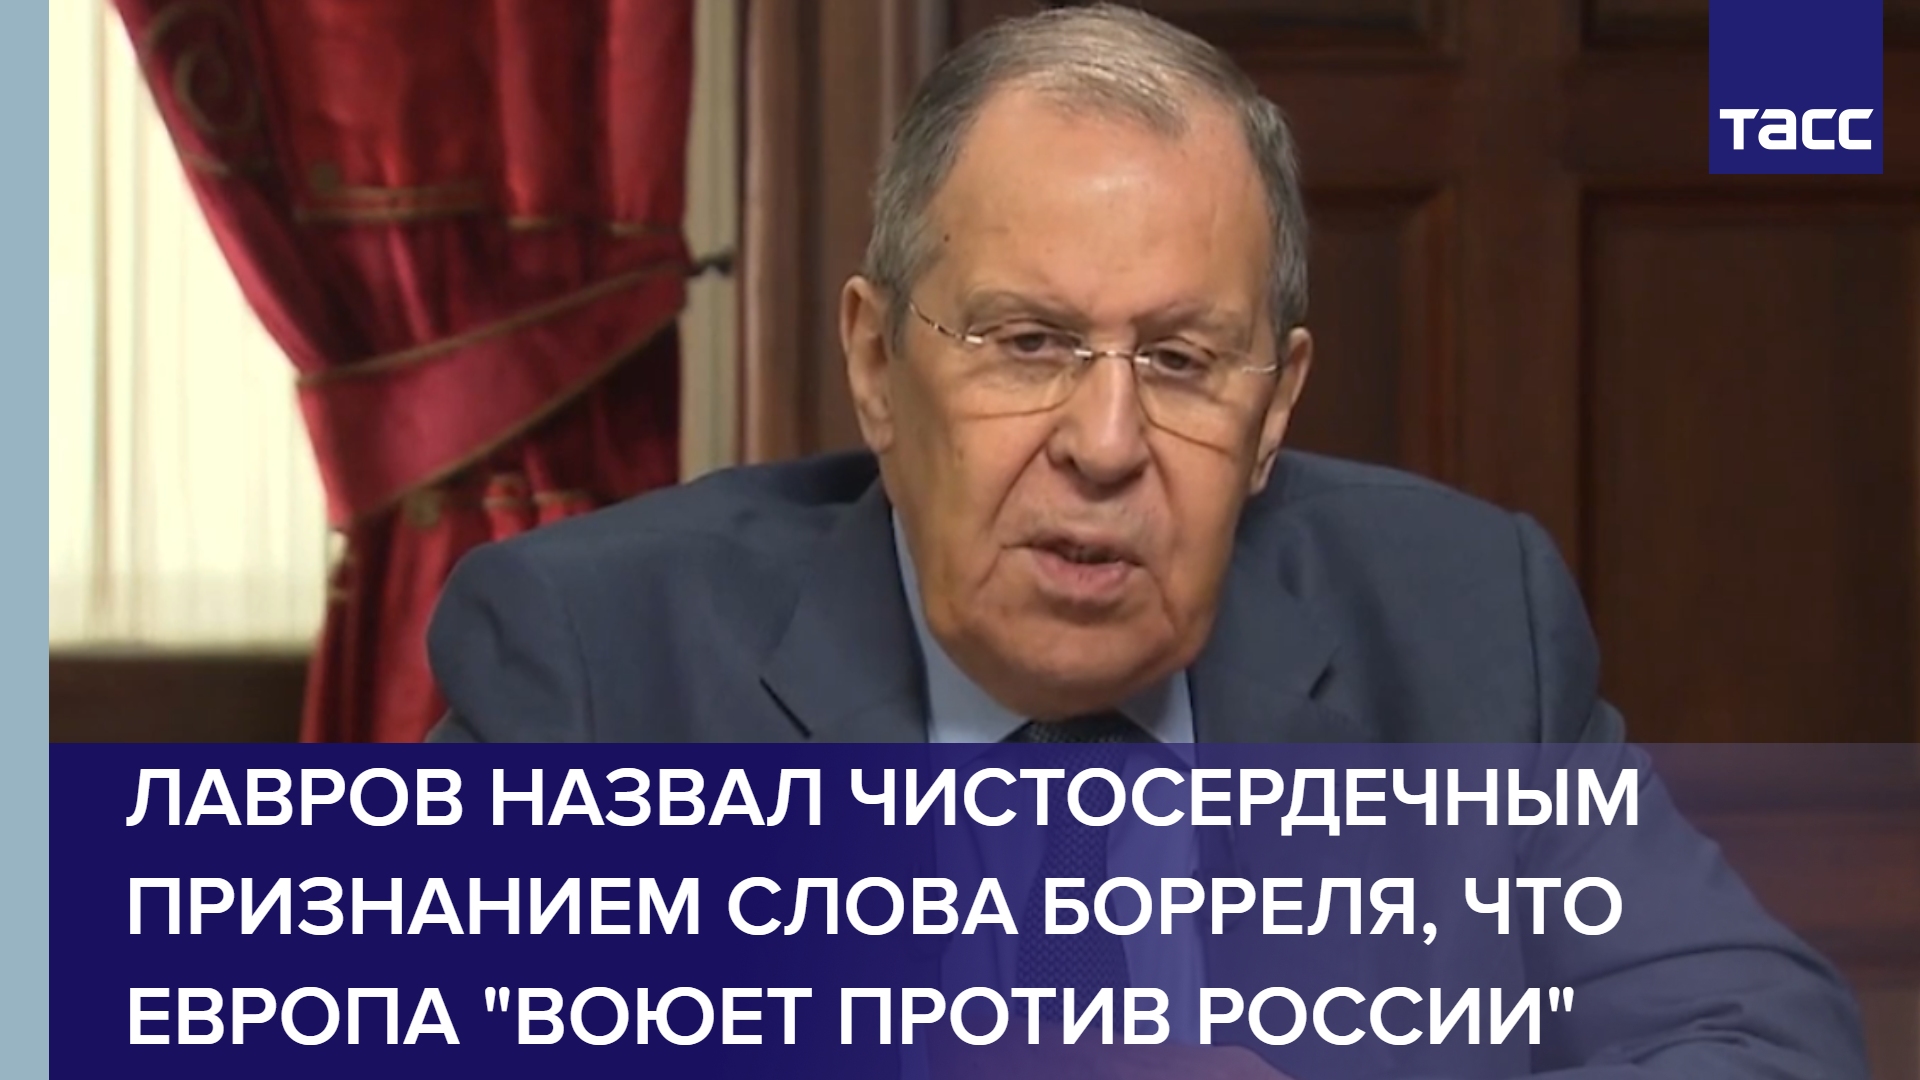 Лавров назвал чистосердечным признанием слова Борреля, что Европа "воюет против России"